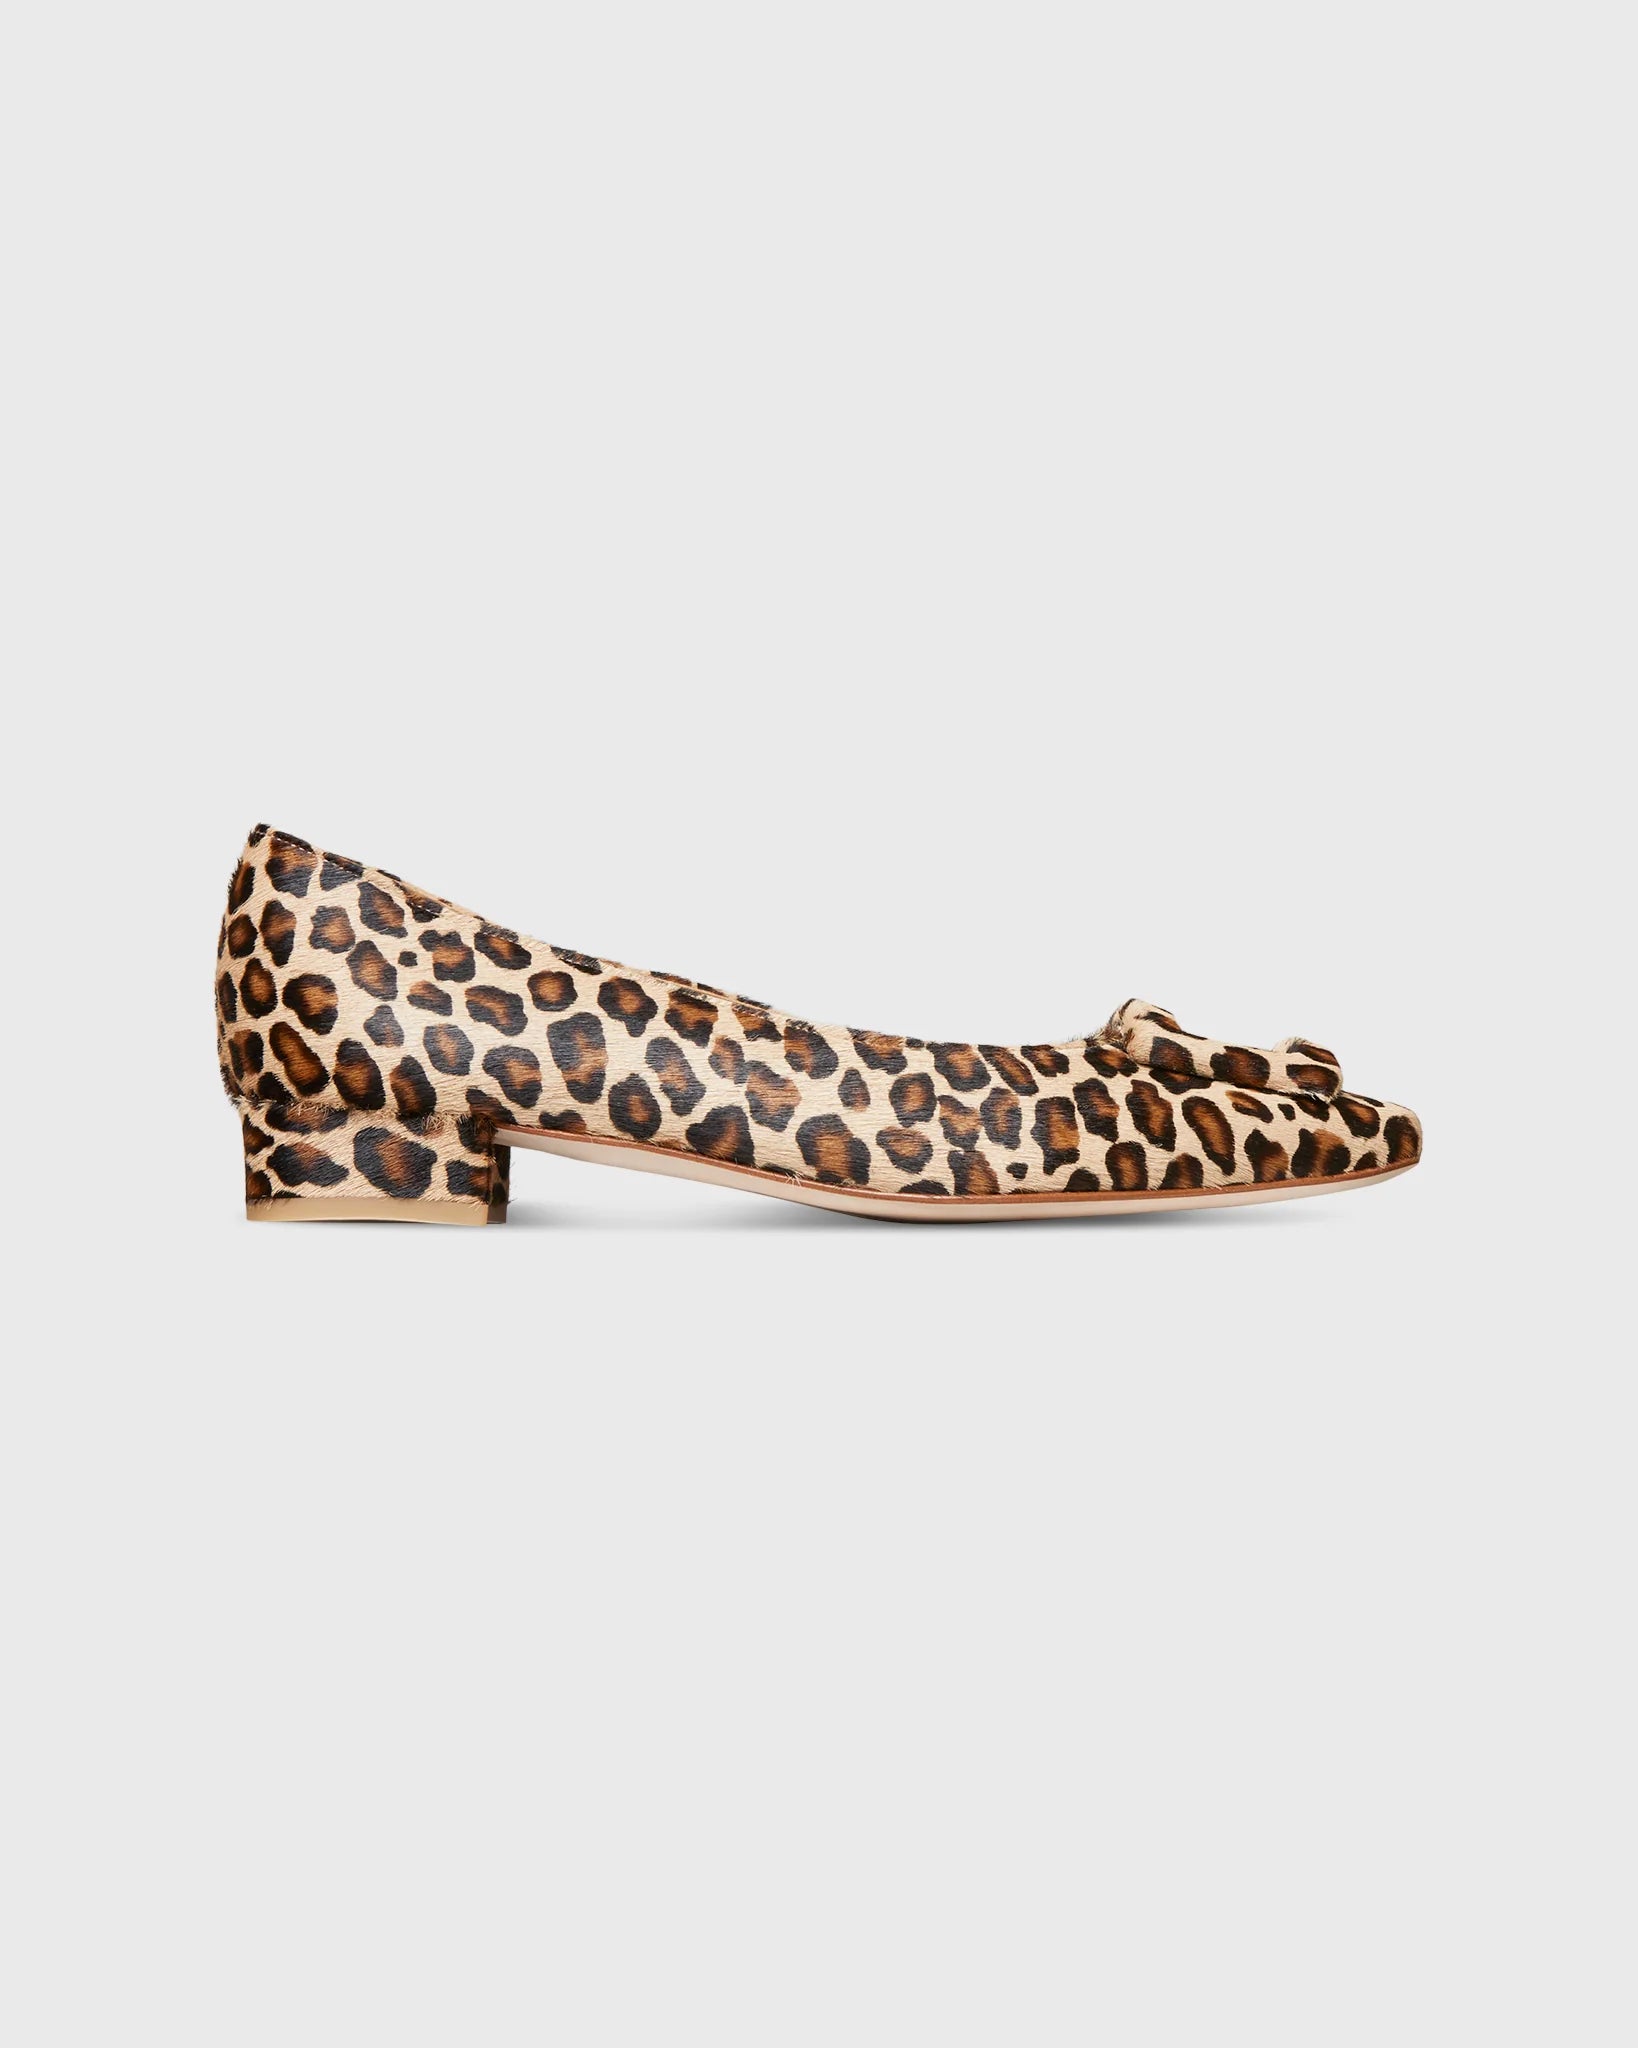 Ann Mashburn Buckle Shoe in Leopard Calf Hair